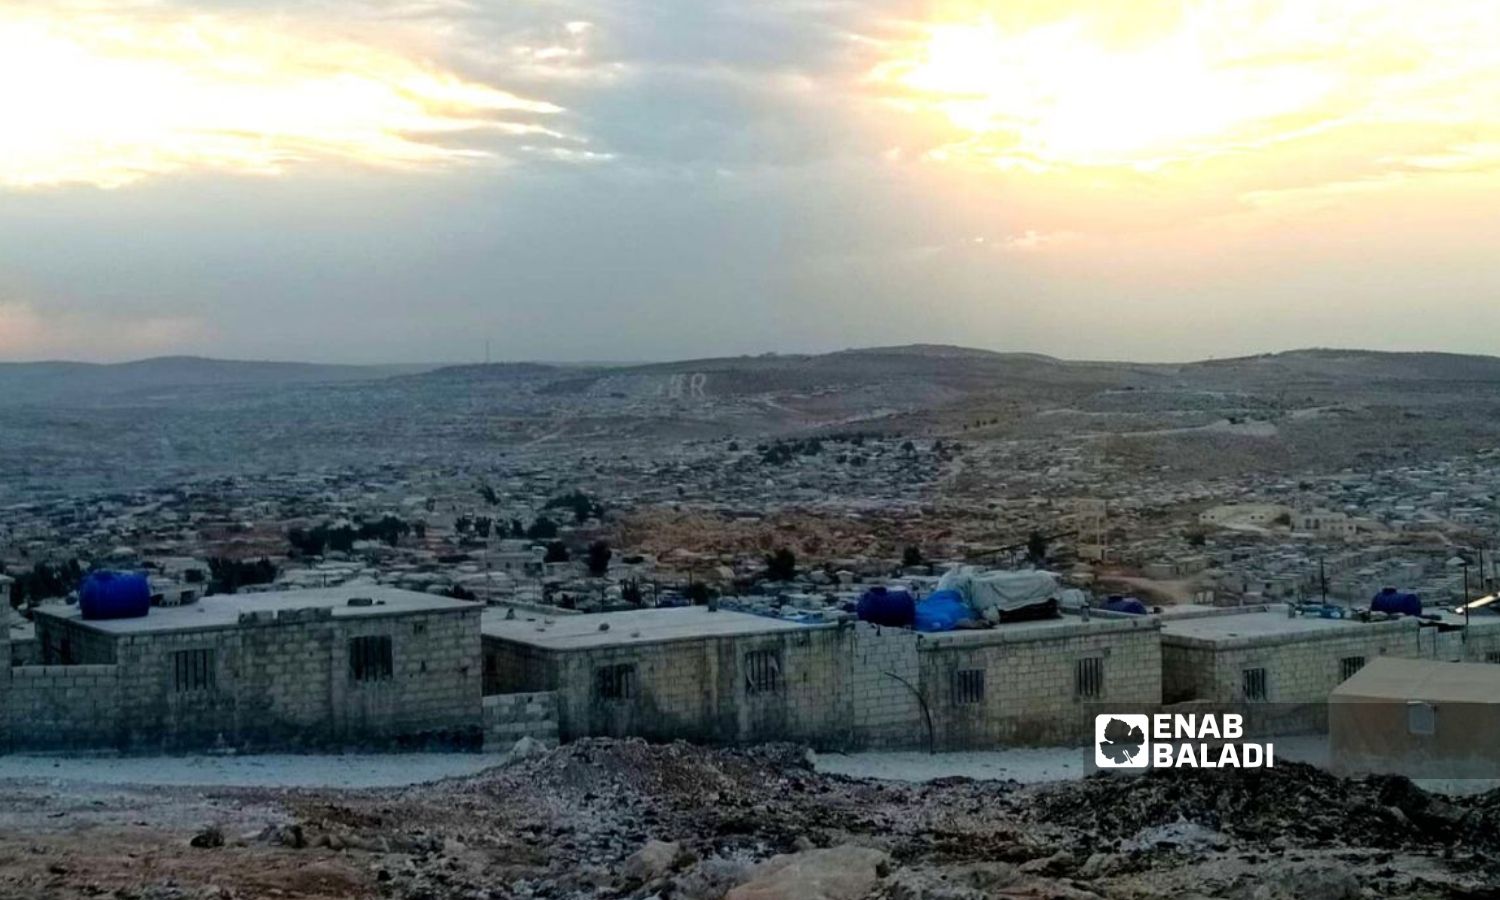 Mashhad Rouhin IDP camps in Idlib (Enab Baladi)